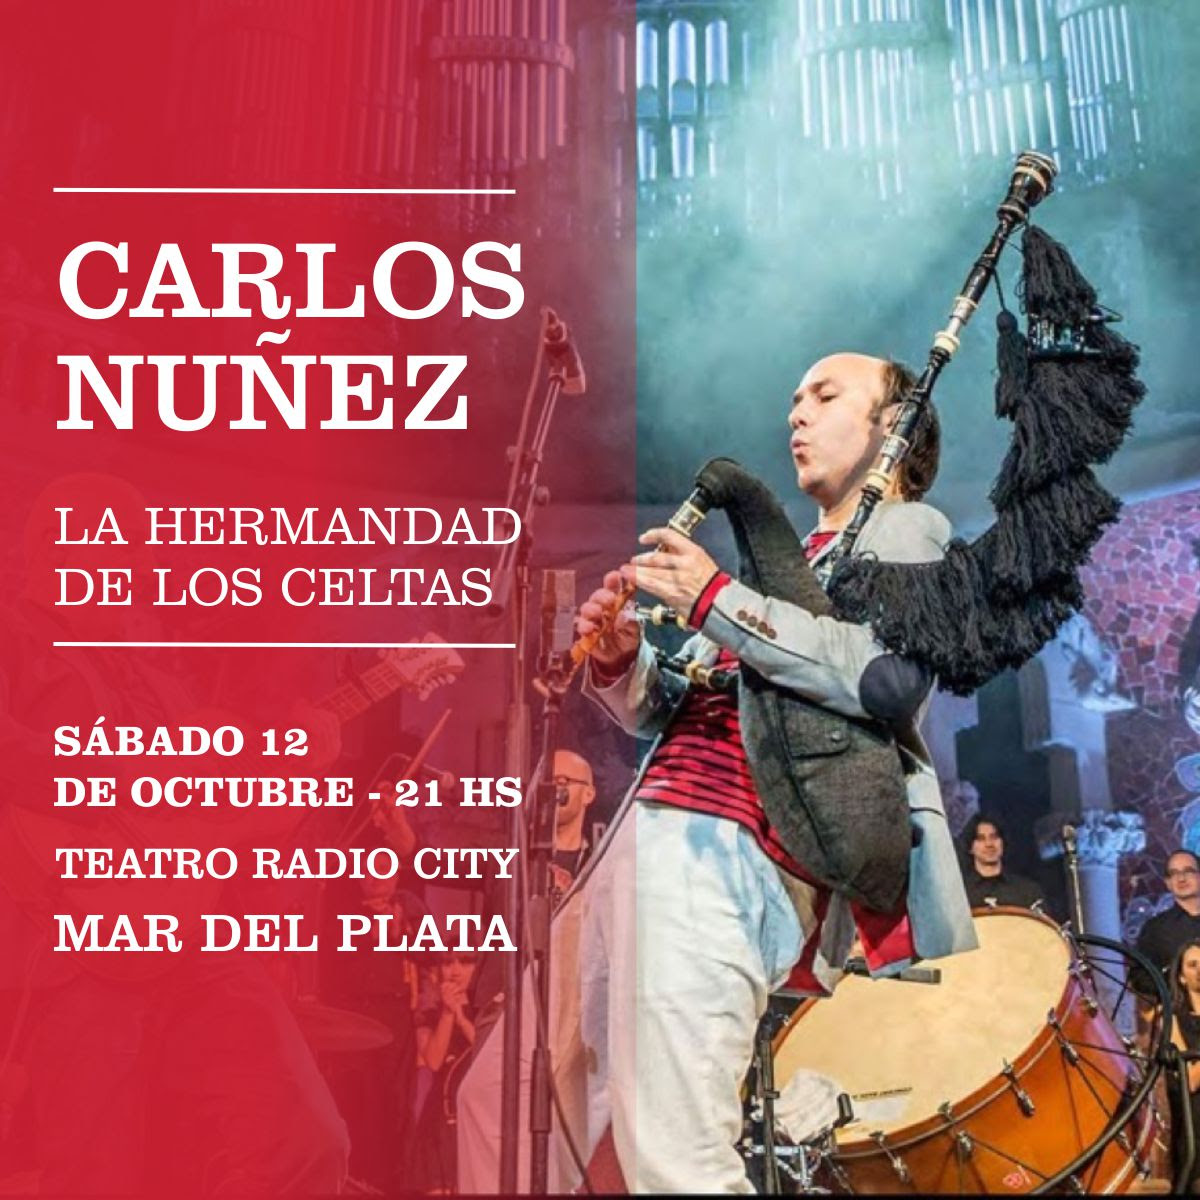 Carlos Nuñez llega a Mar del Plata con su show “La hermandad de los Celtas”